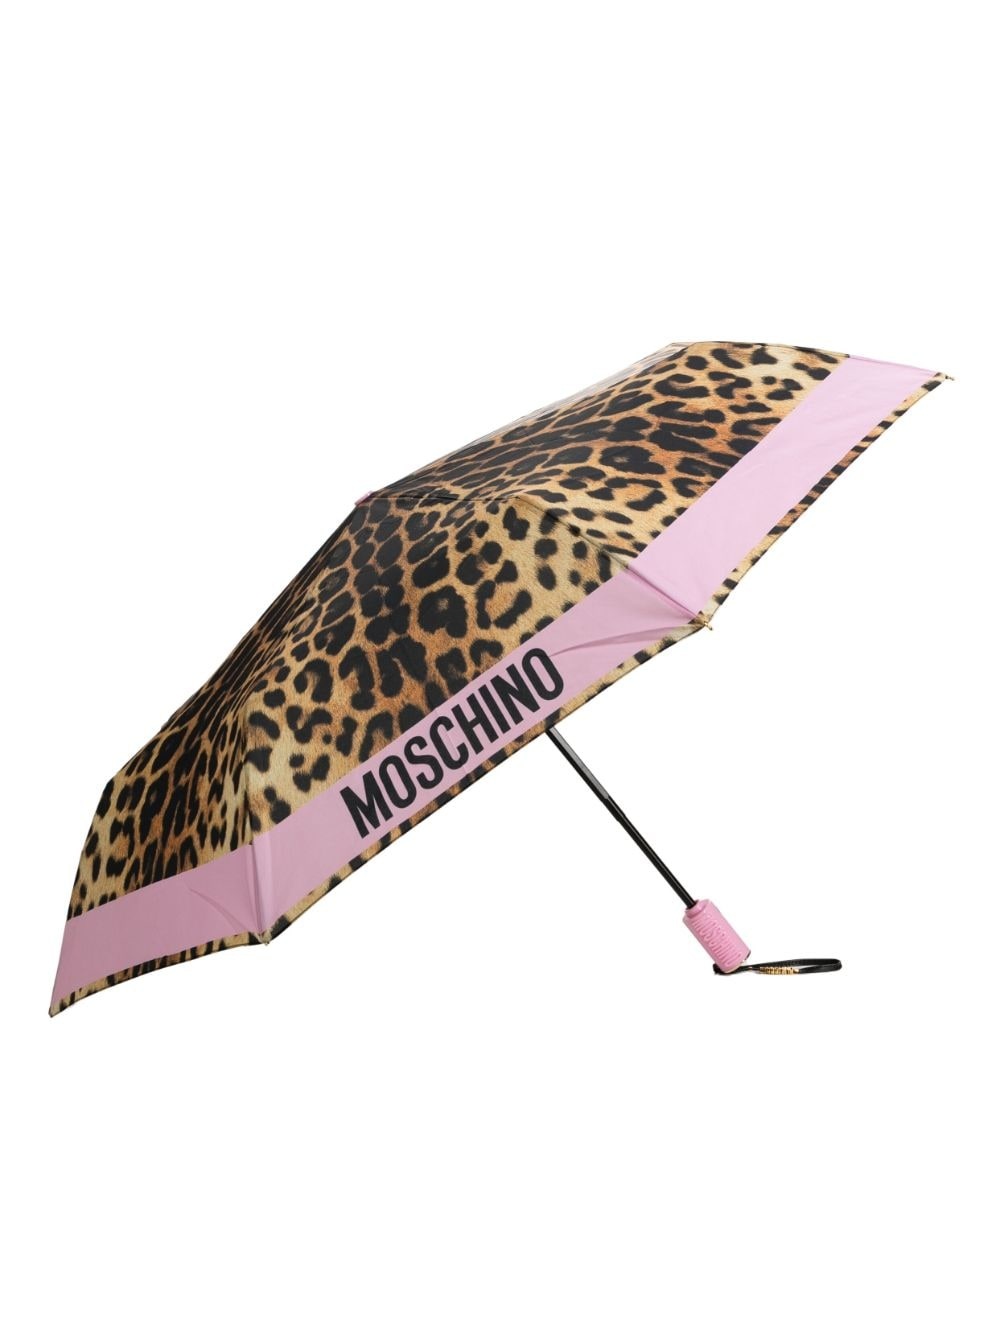 Moschino graphic-print waterproof umbrella - Pink